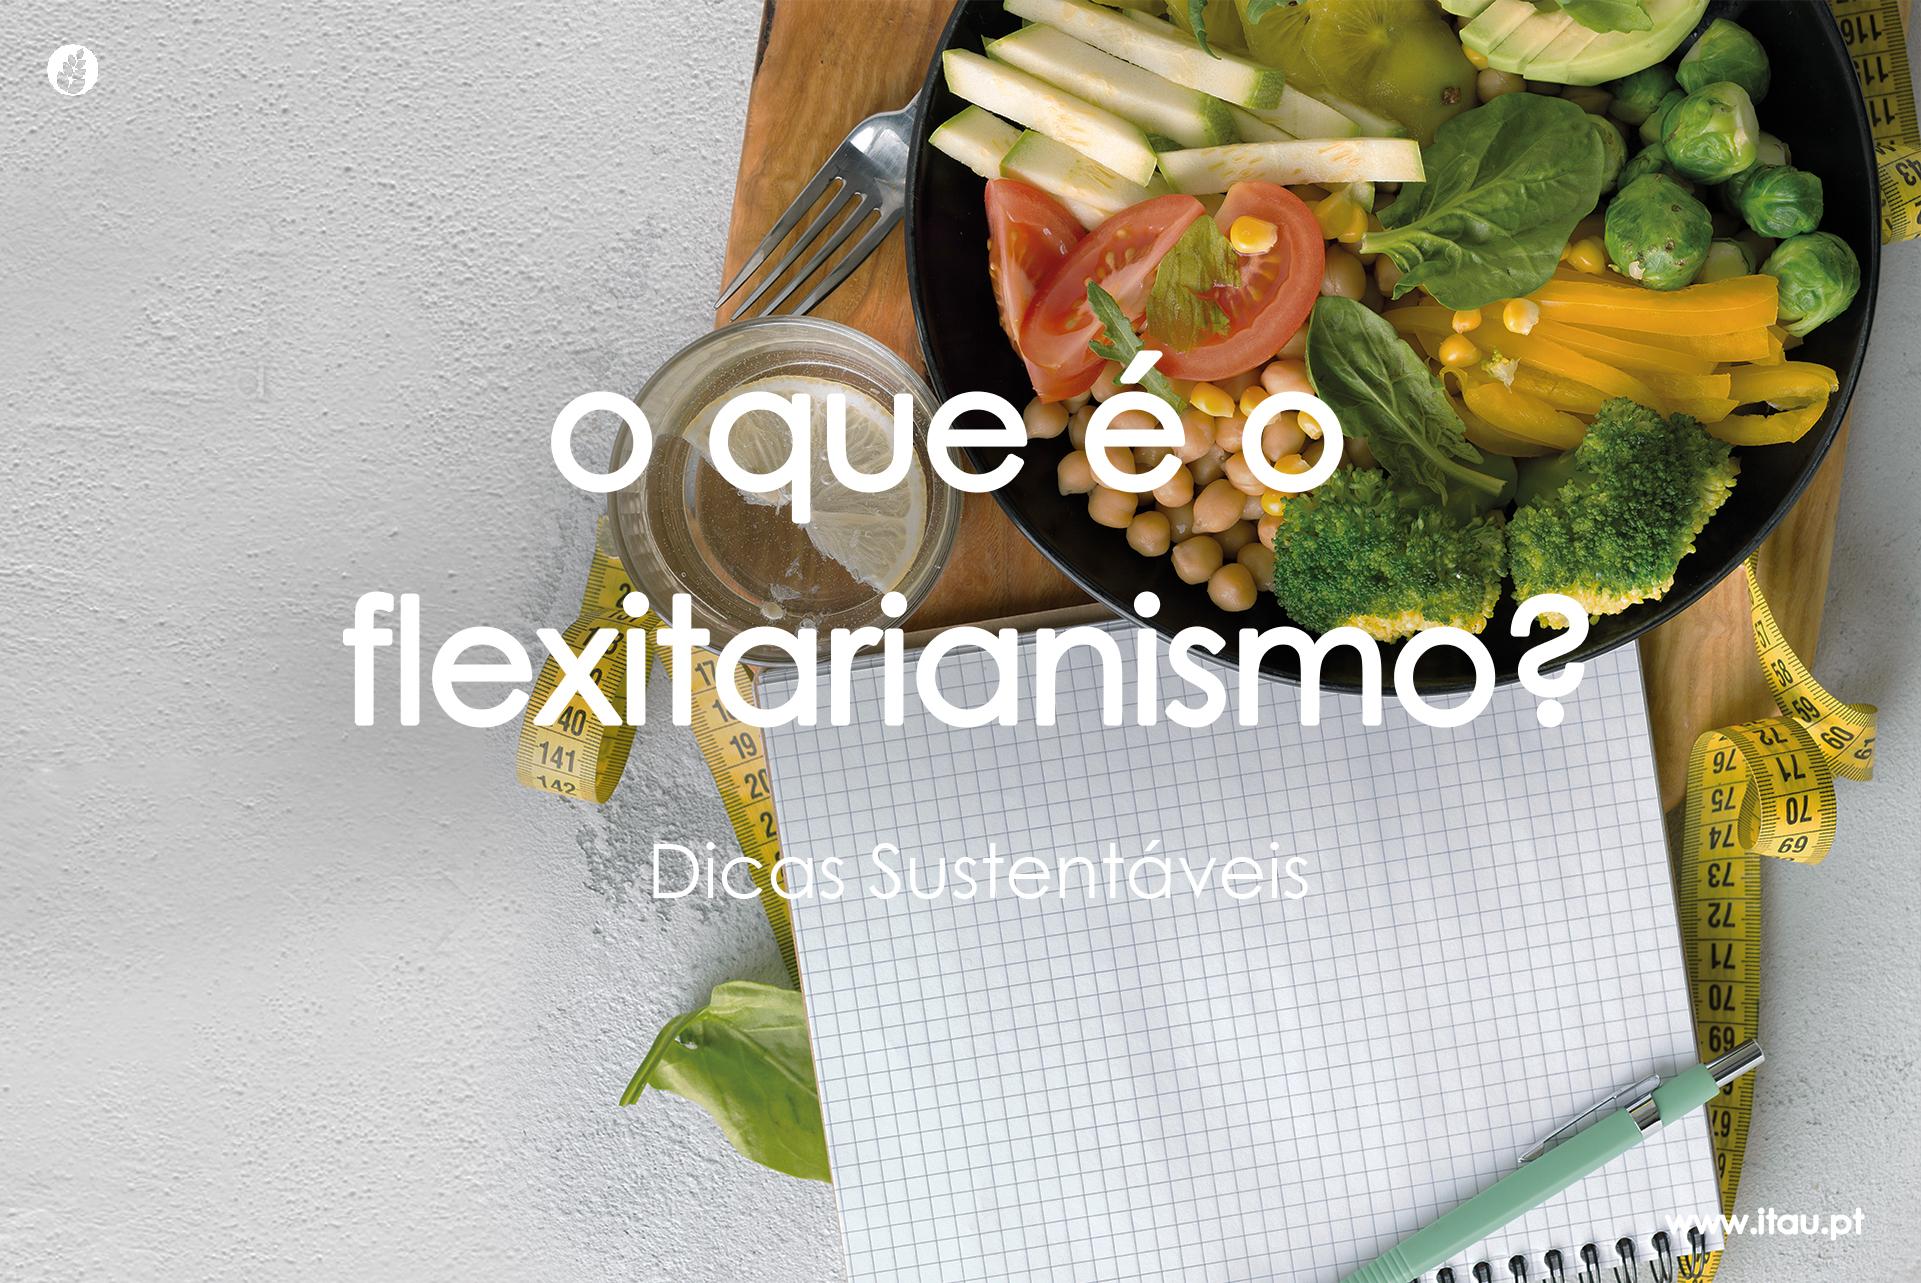 O que é o flexitarianismo?